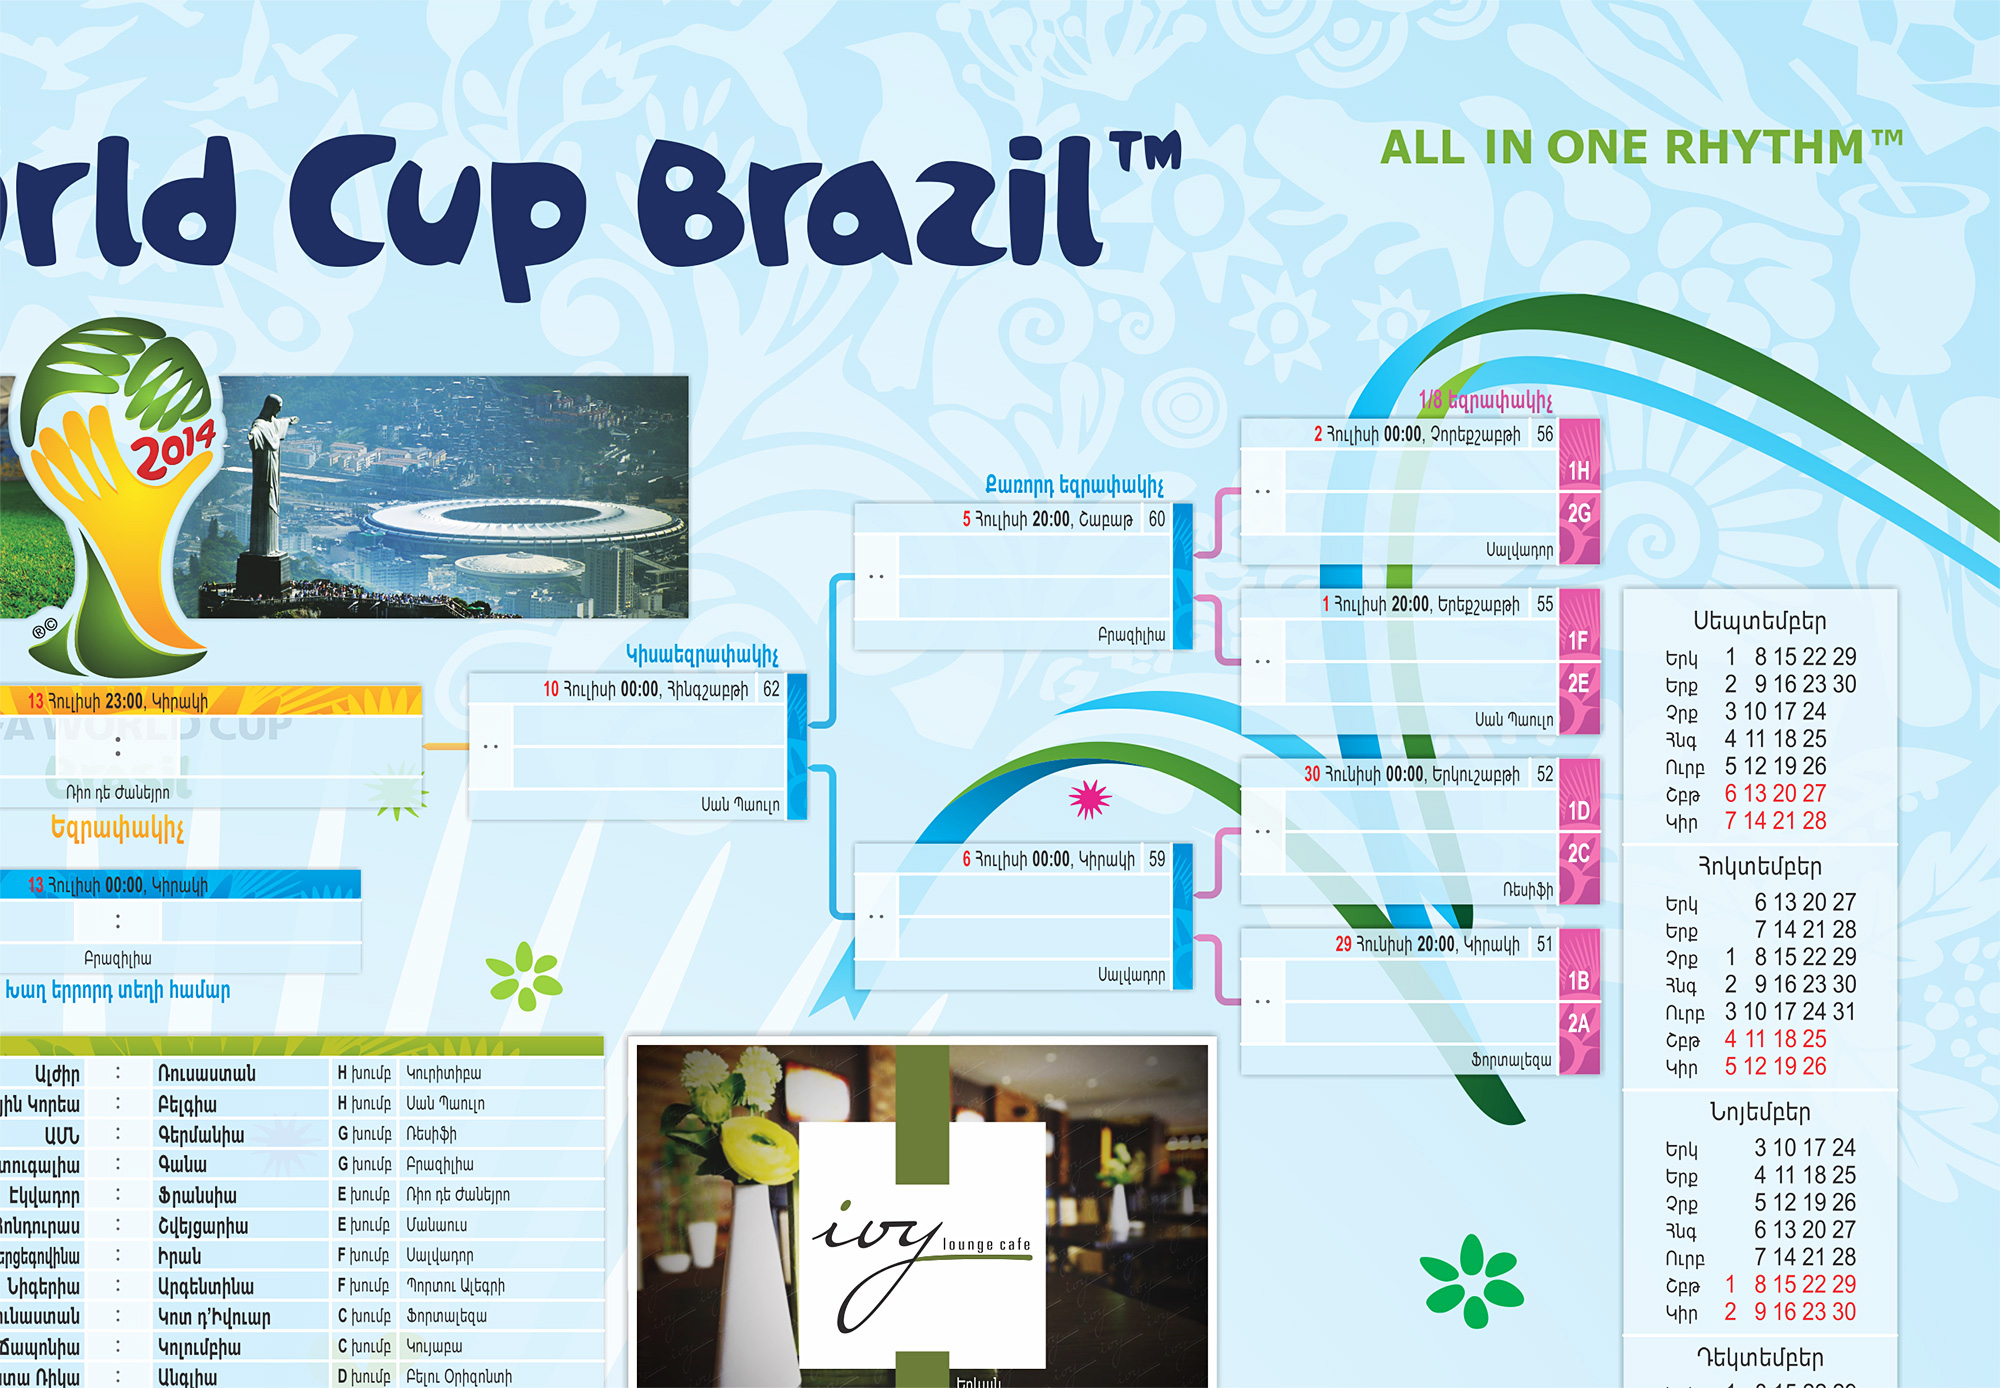 2014 FWC Wallchart-2014 FIFA World Cup Brazil Poster Design